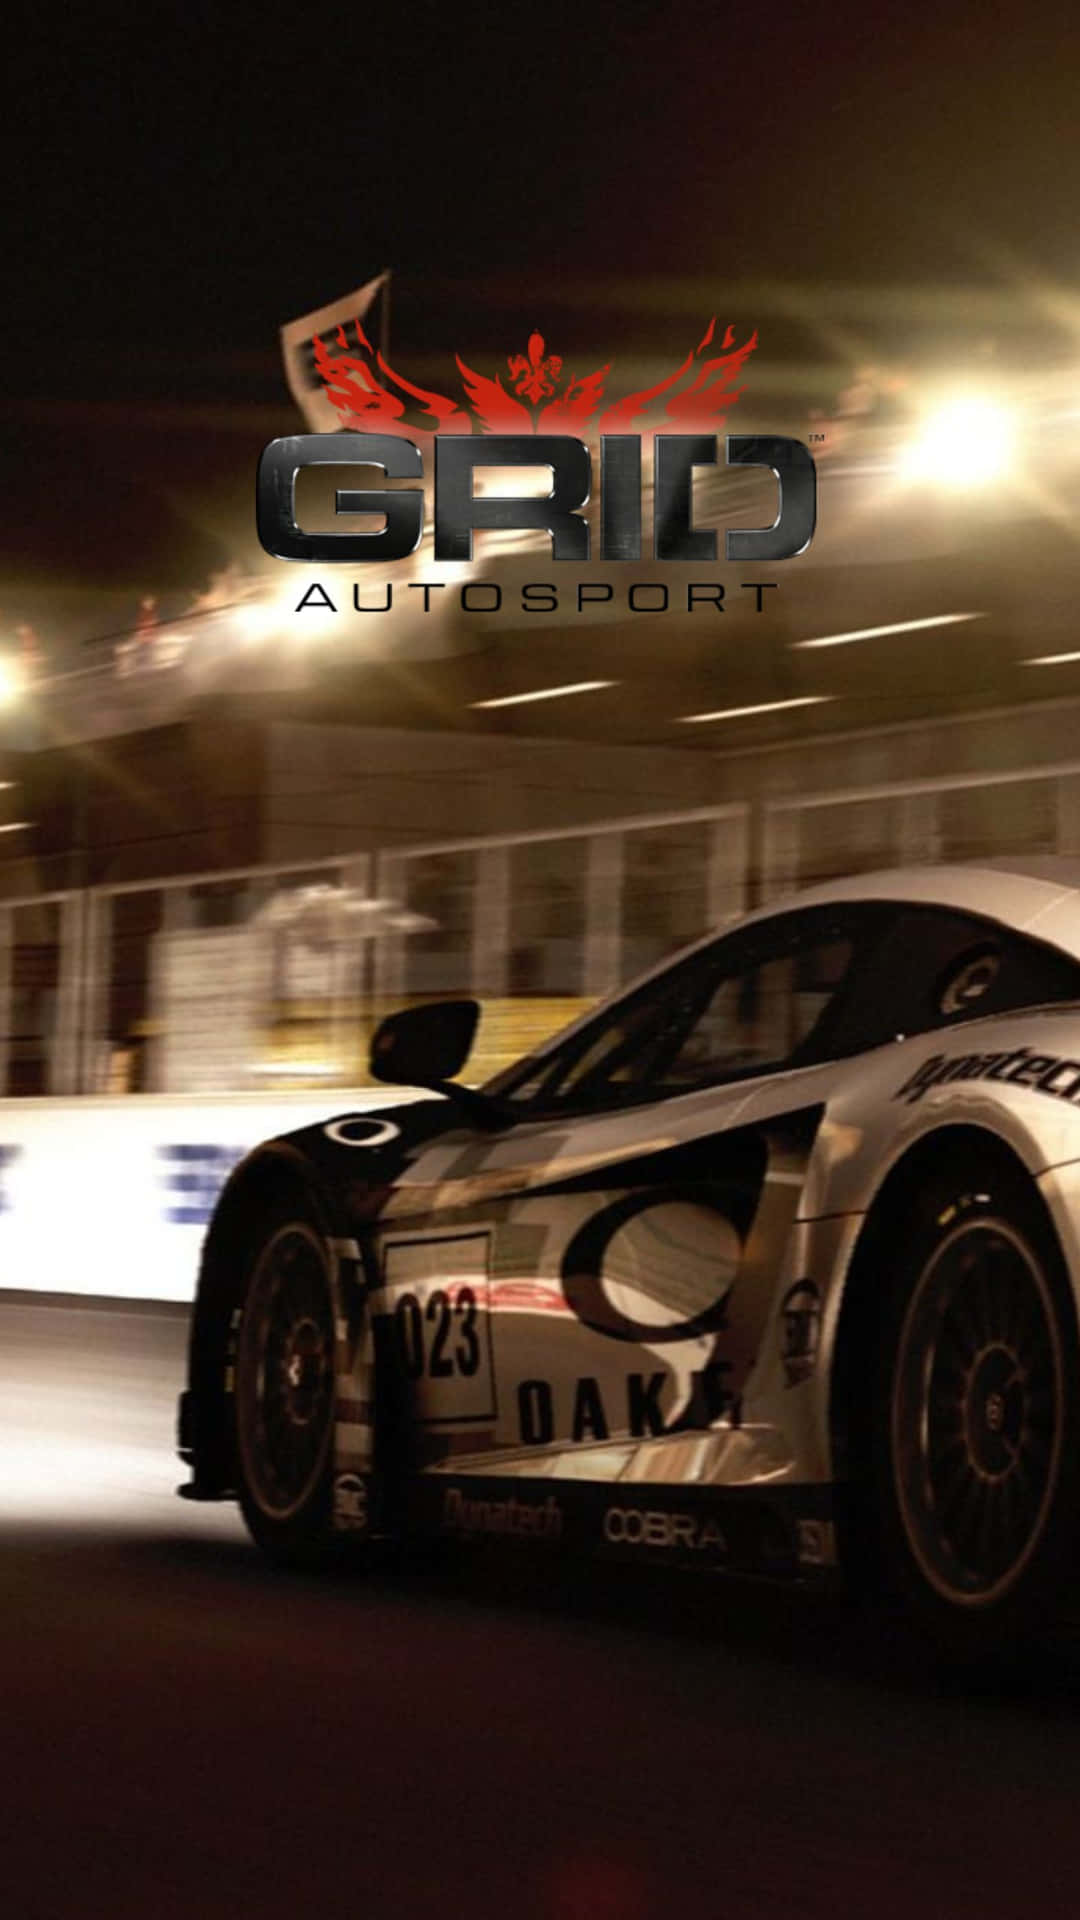 Embárcateen Una Emocionante Carrera En Android Grid Autosport